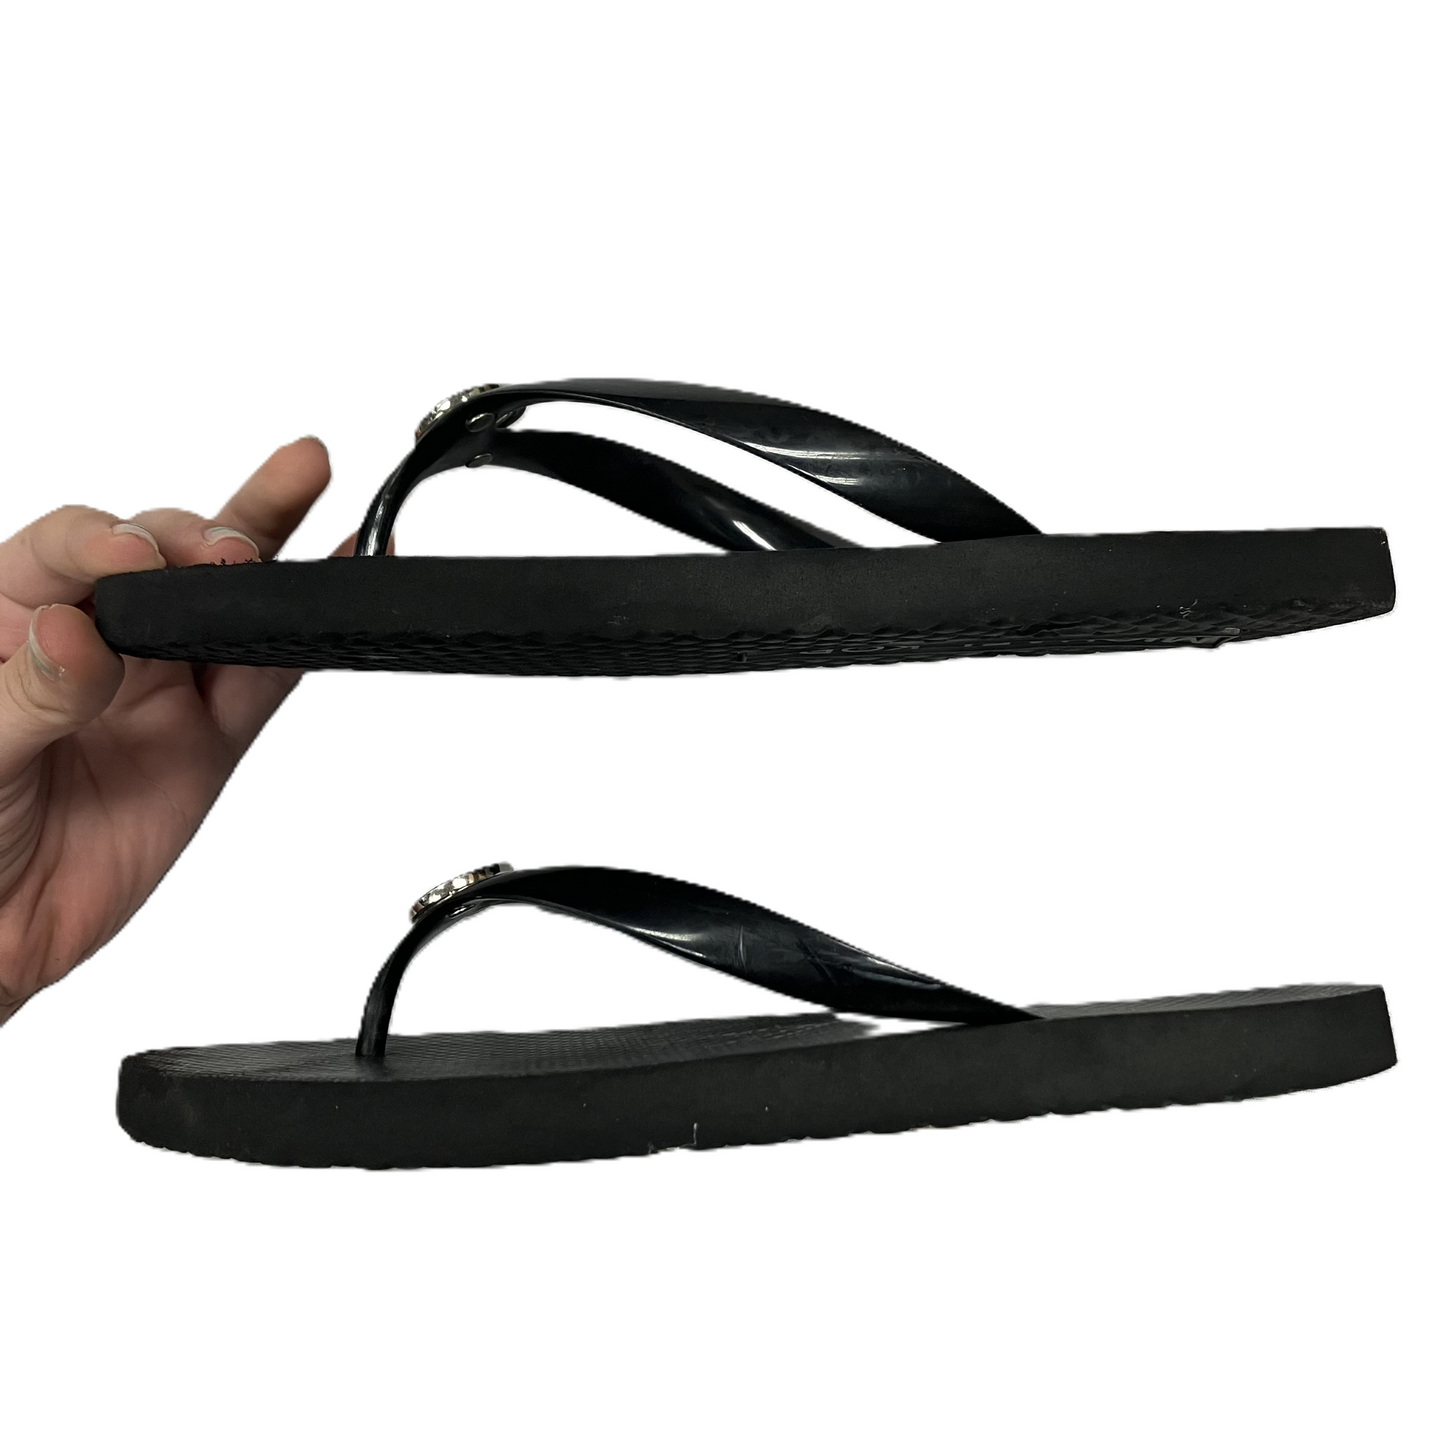 Black Sandals Flip Flops By Michael Kors, Size: 9